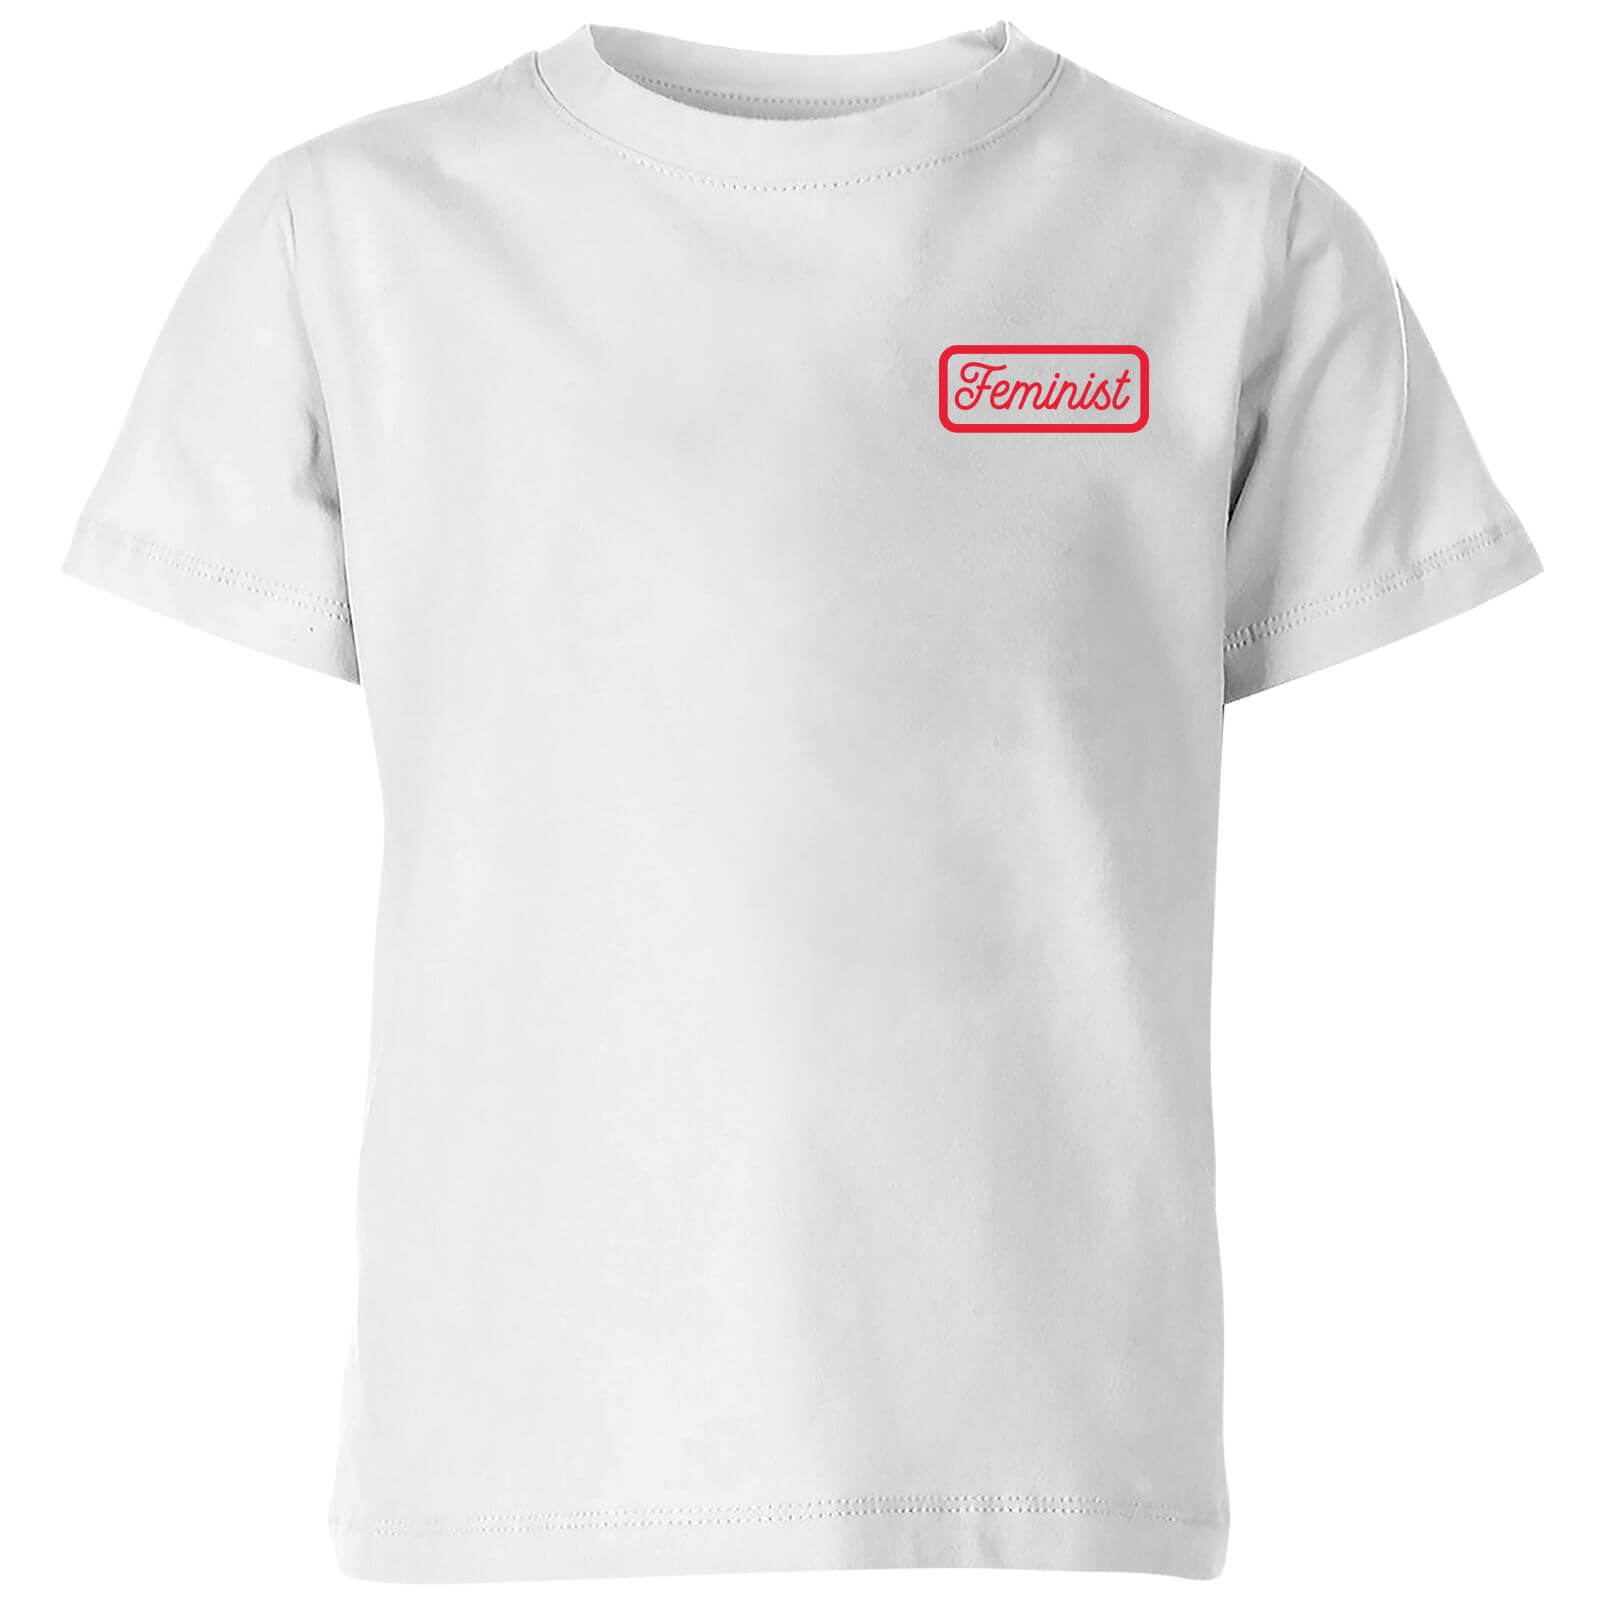 Feminist Kids' T-Shirt - White - 3-4 Years - White